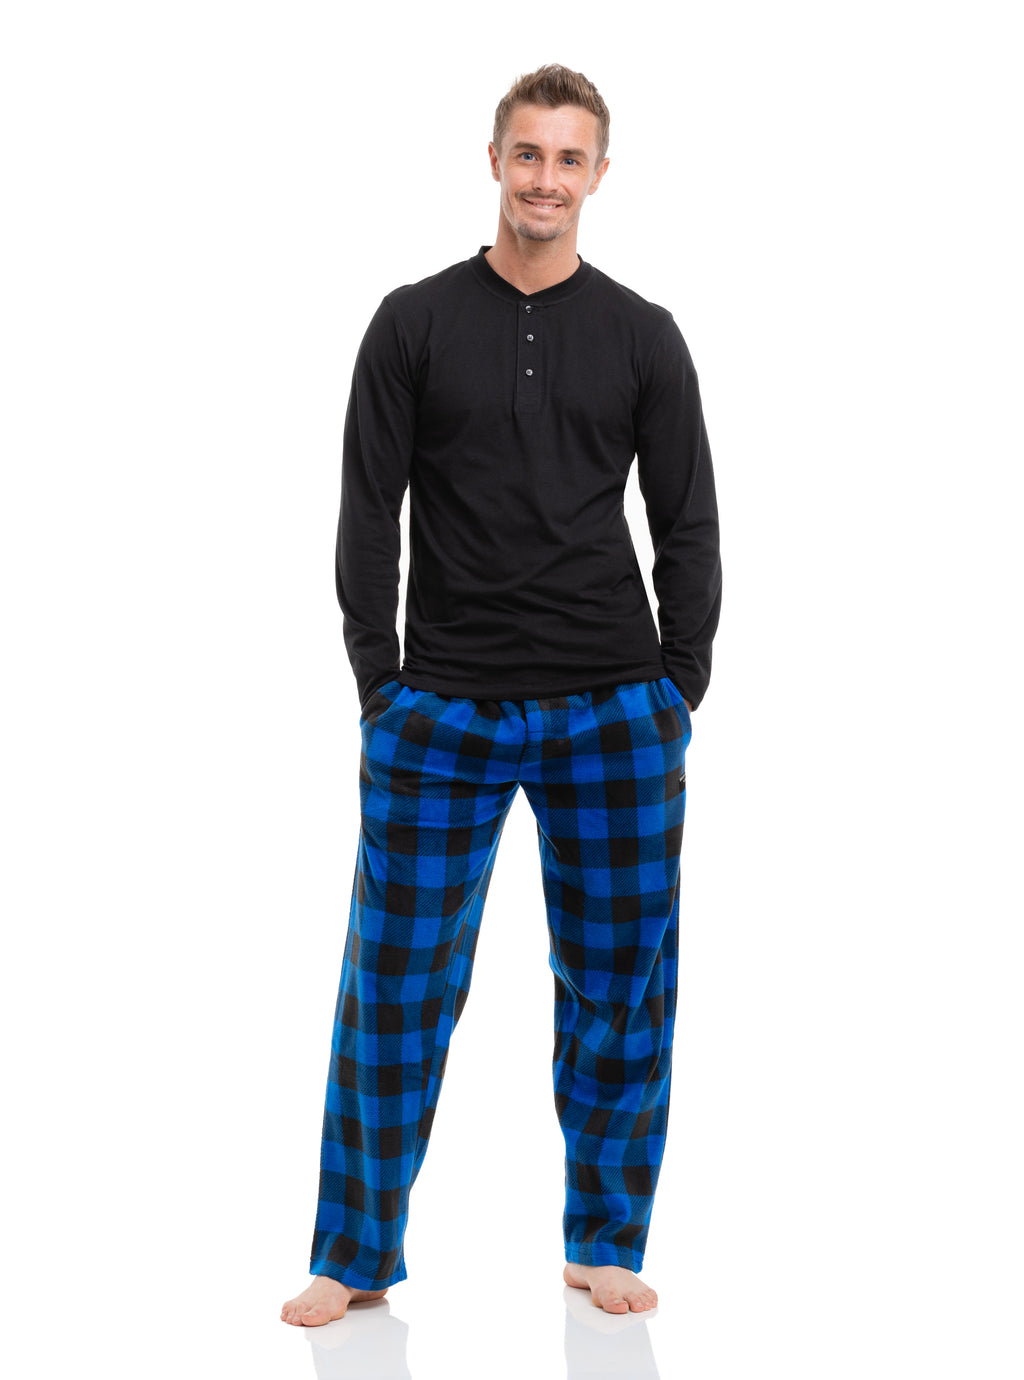 ZZXXB New York City Pajama Pants for Men Comfort Sleep Lounge